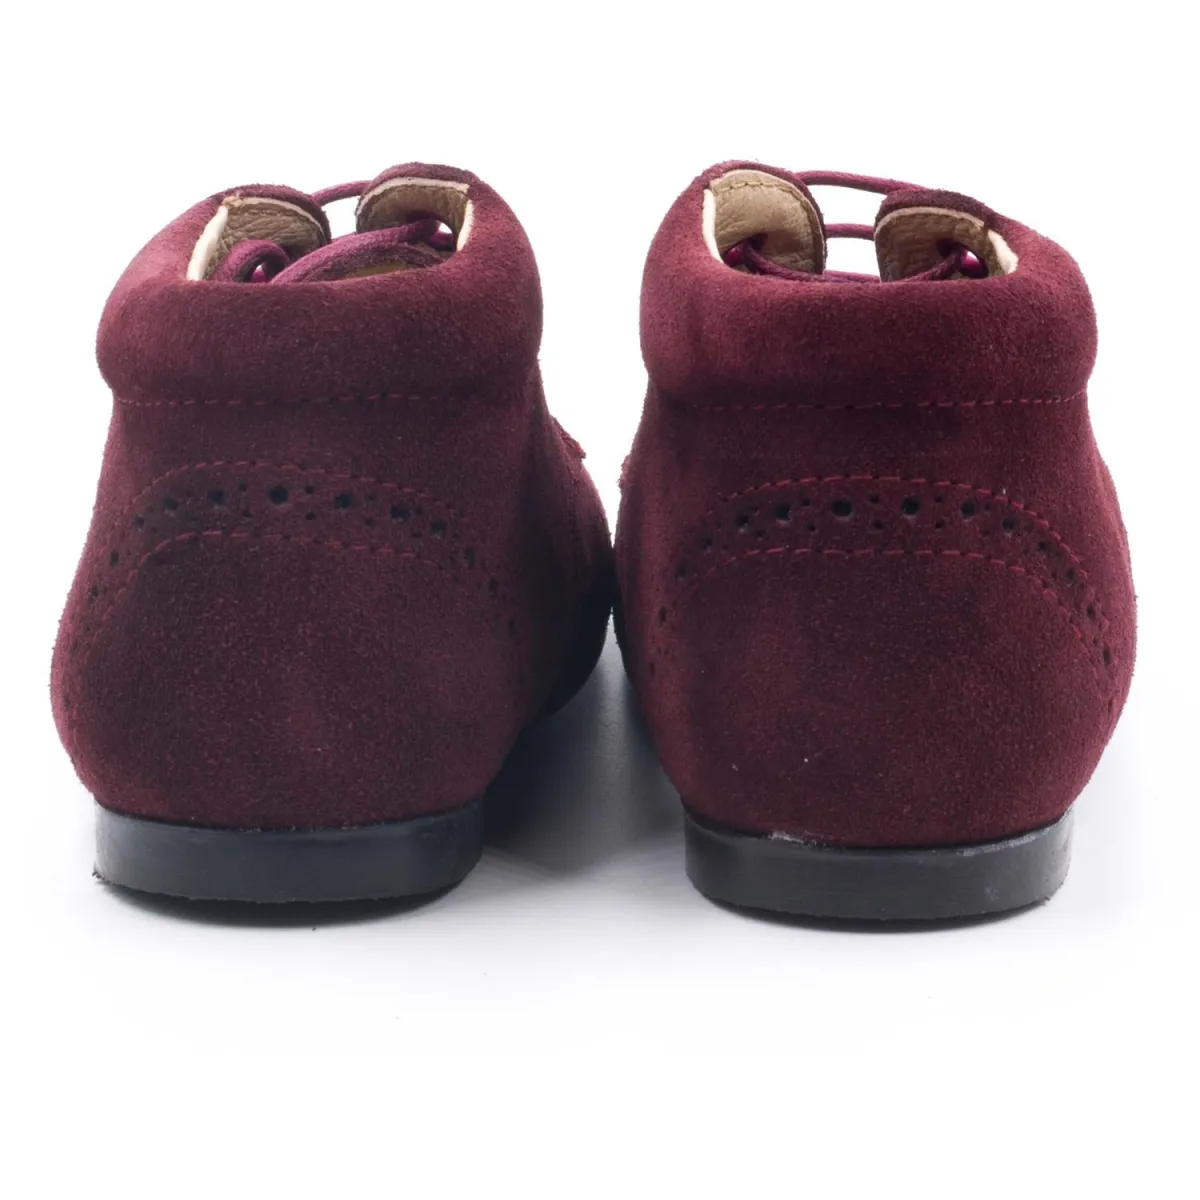 Boni Richard - chaussures bébé classique en daim - Bordeaux